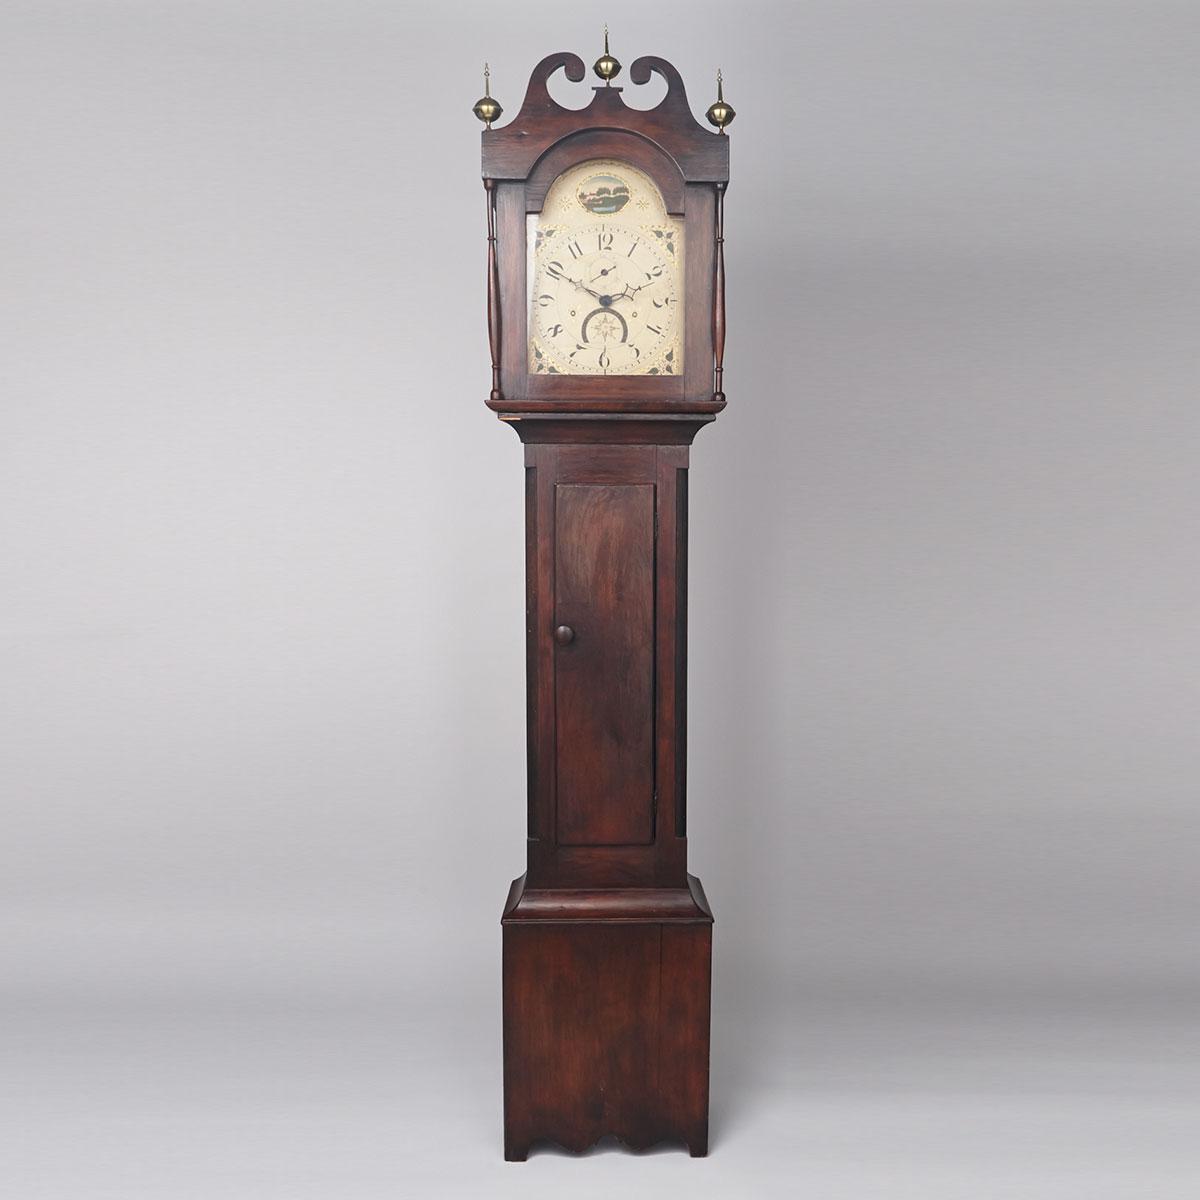 Oxford County Tall Case Clock, R. Woodruff, Burford, Upper Canada, c.1830